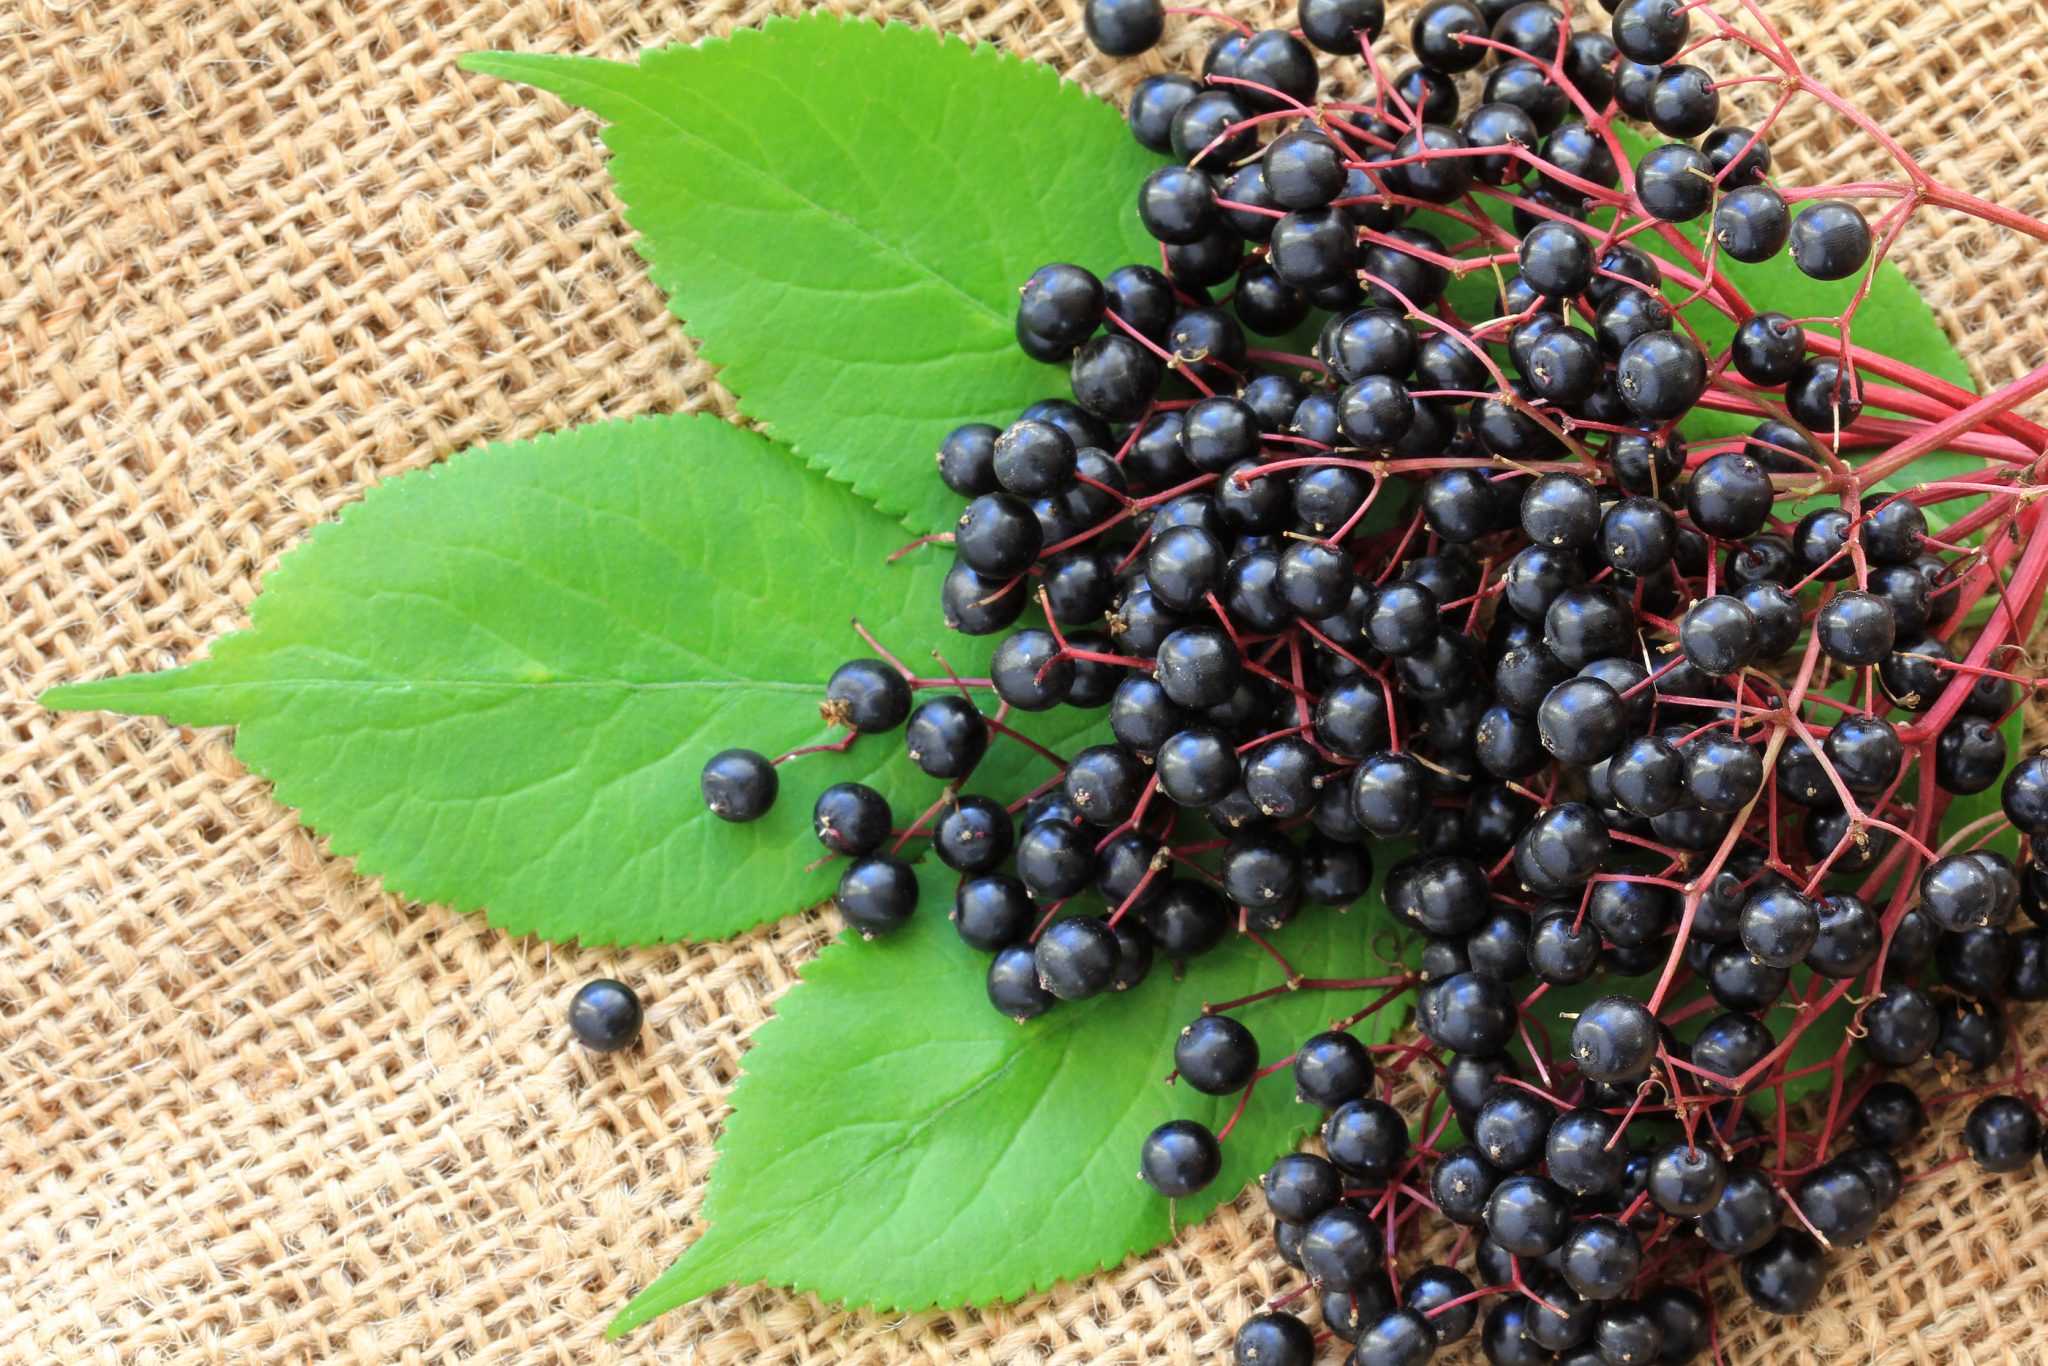 Elderberry benefits - Dr. Pingel